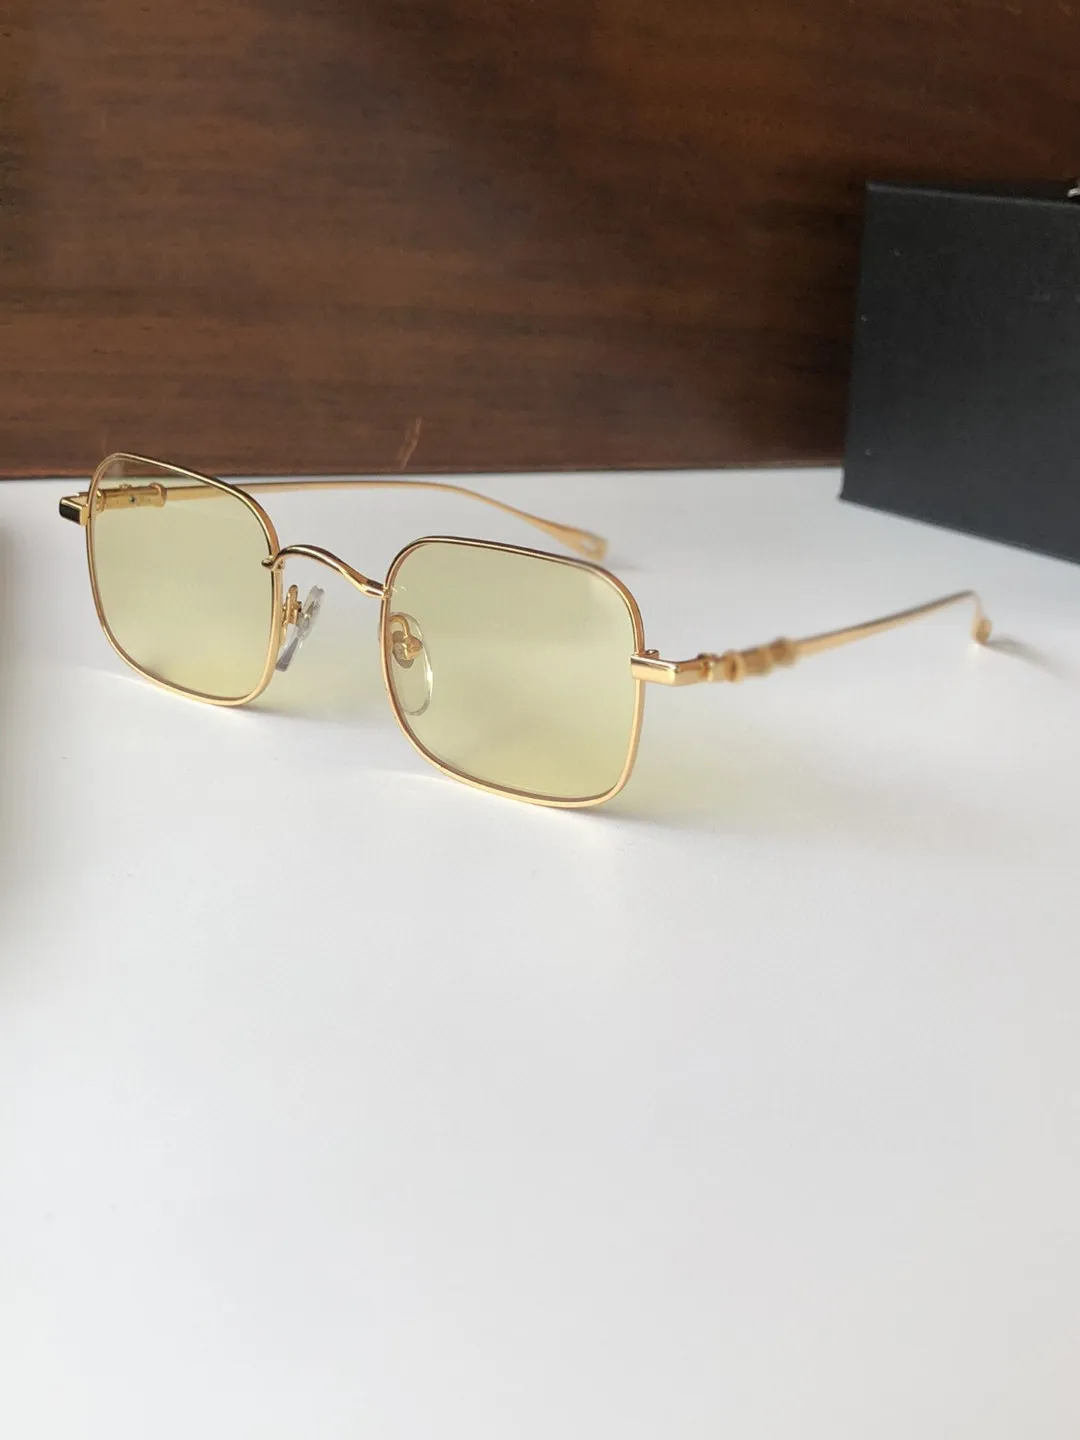 Chrom Chuck Top Original Högkvalitativa Designer Solglasögon för Mens Berömda Fashionable Retro Luxury Brand Glasögon Mode Design Kvinnor Glasögon med låda